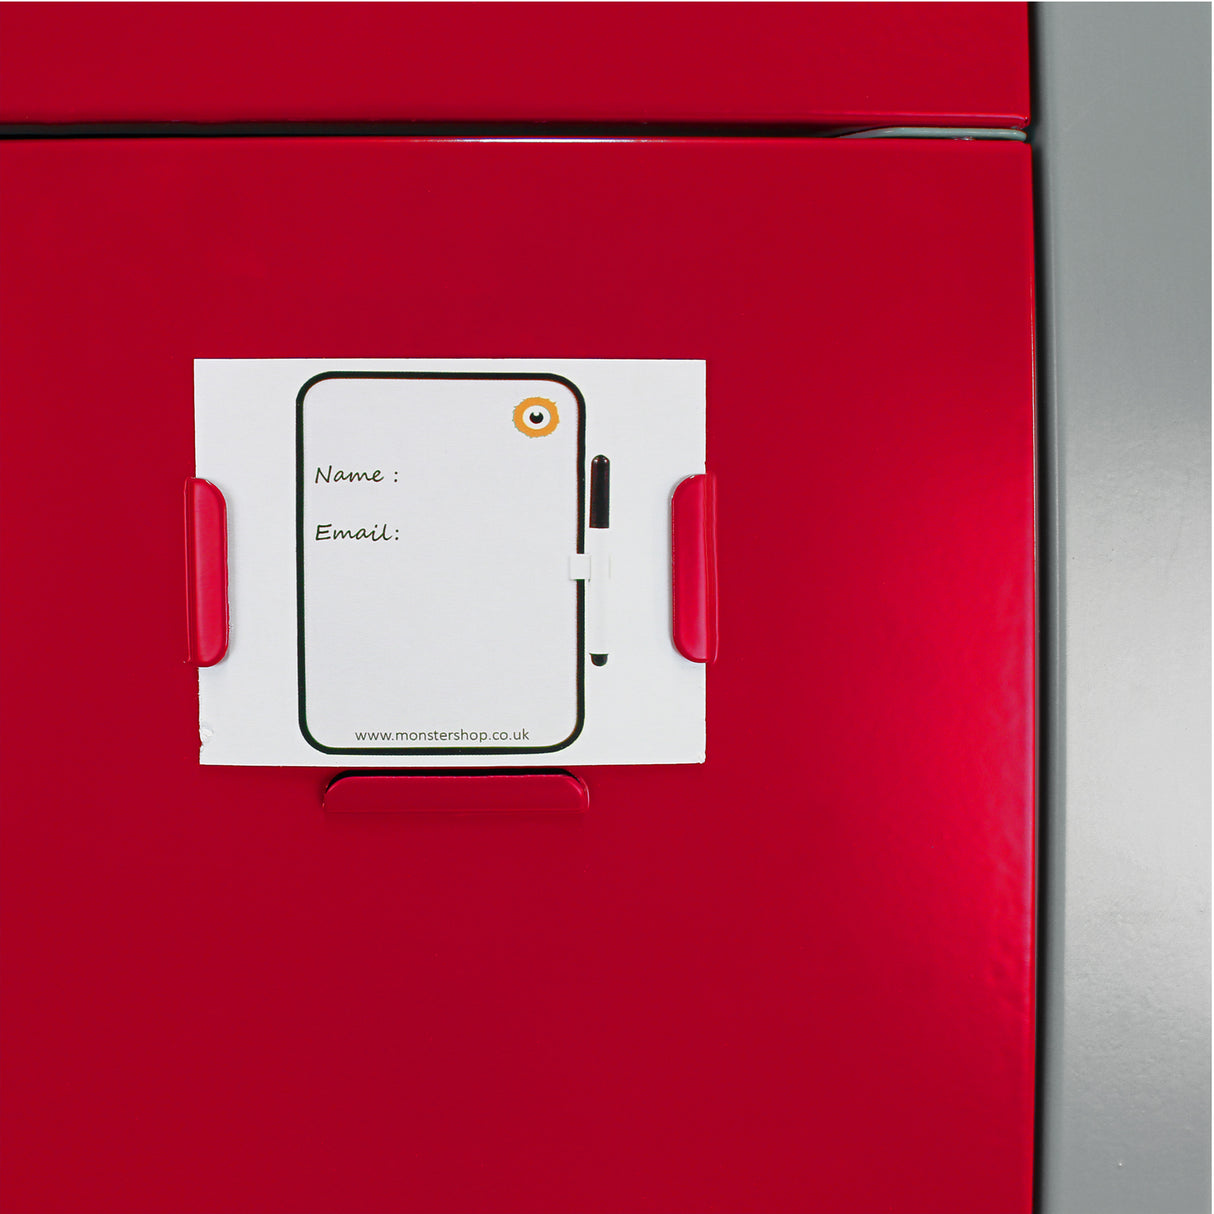 Metal Storage Lockers - Three Doors, Flatpacked, Red